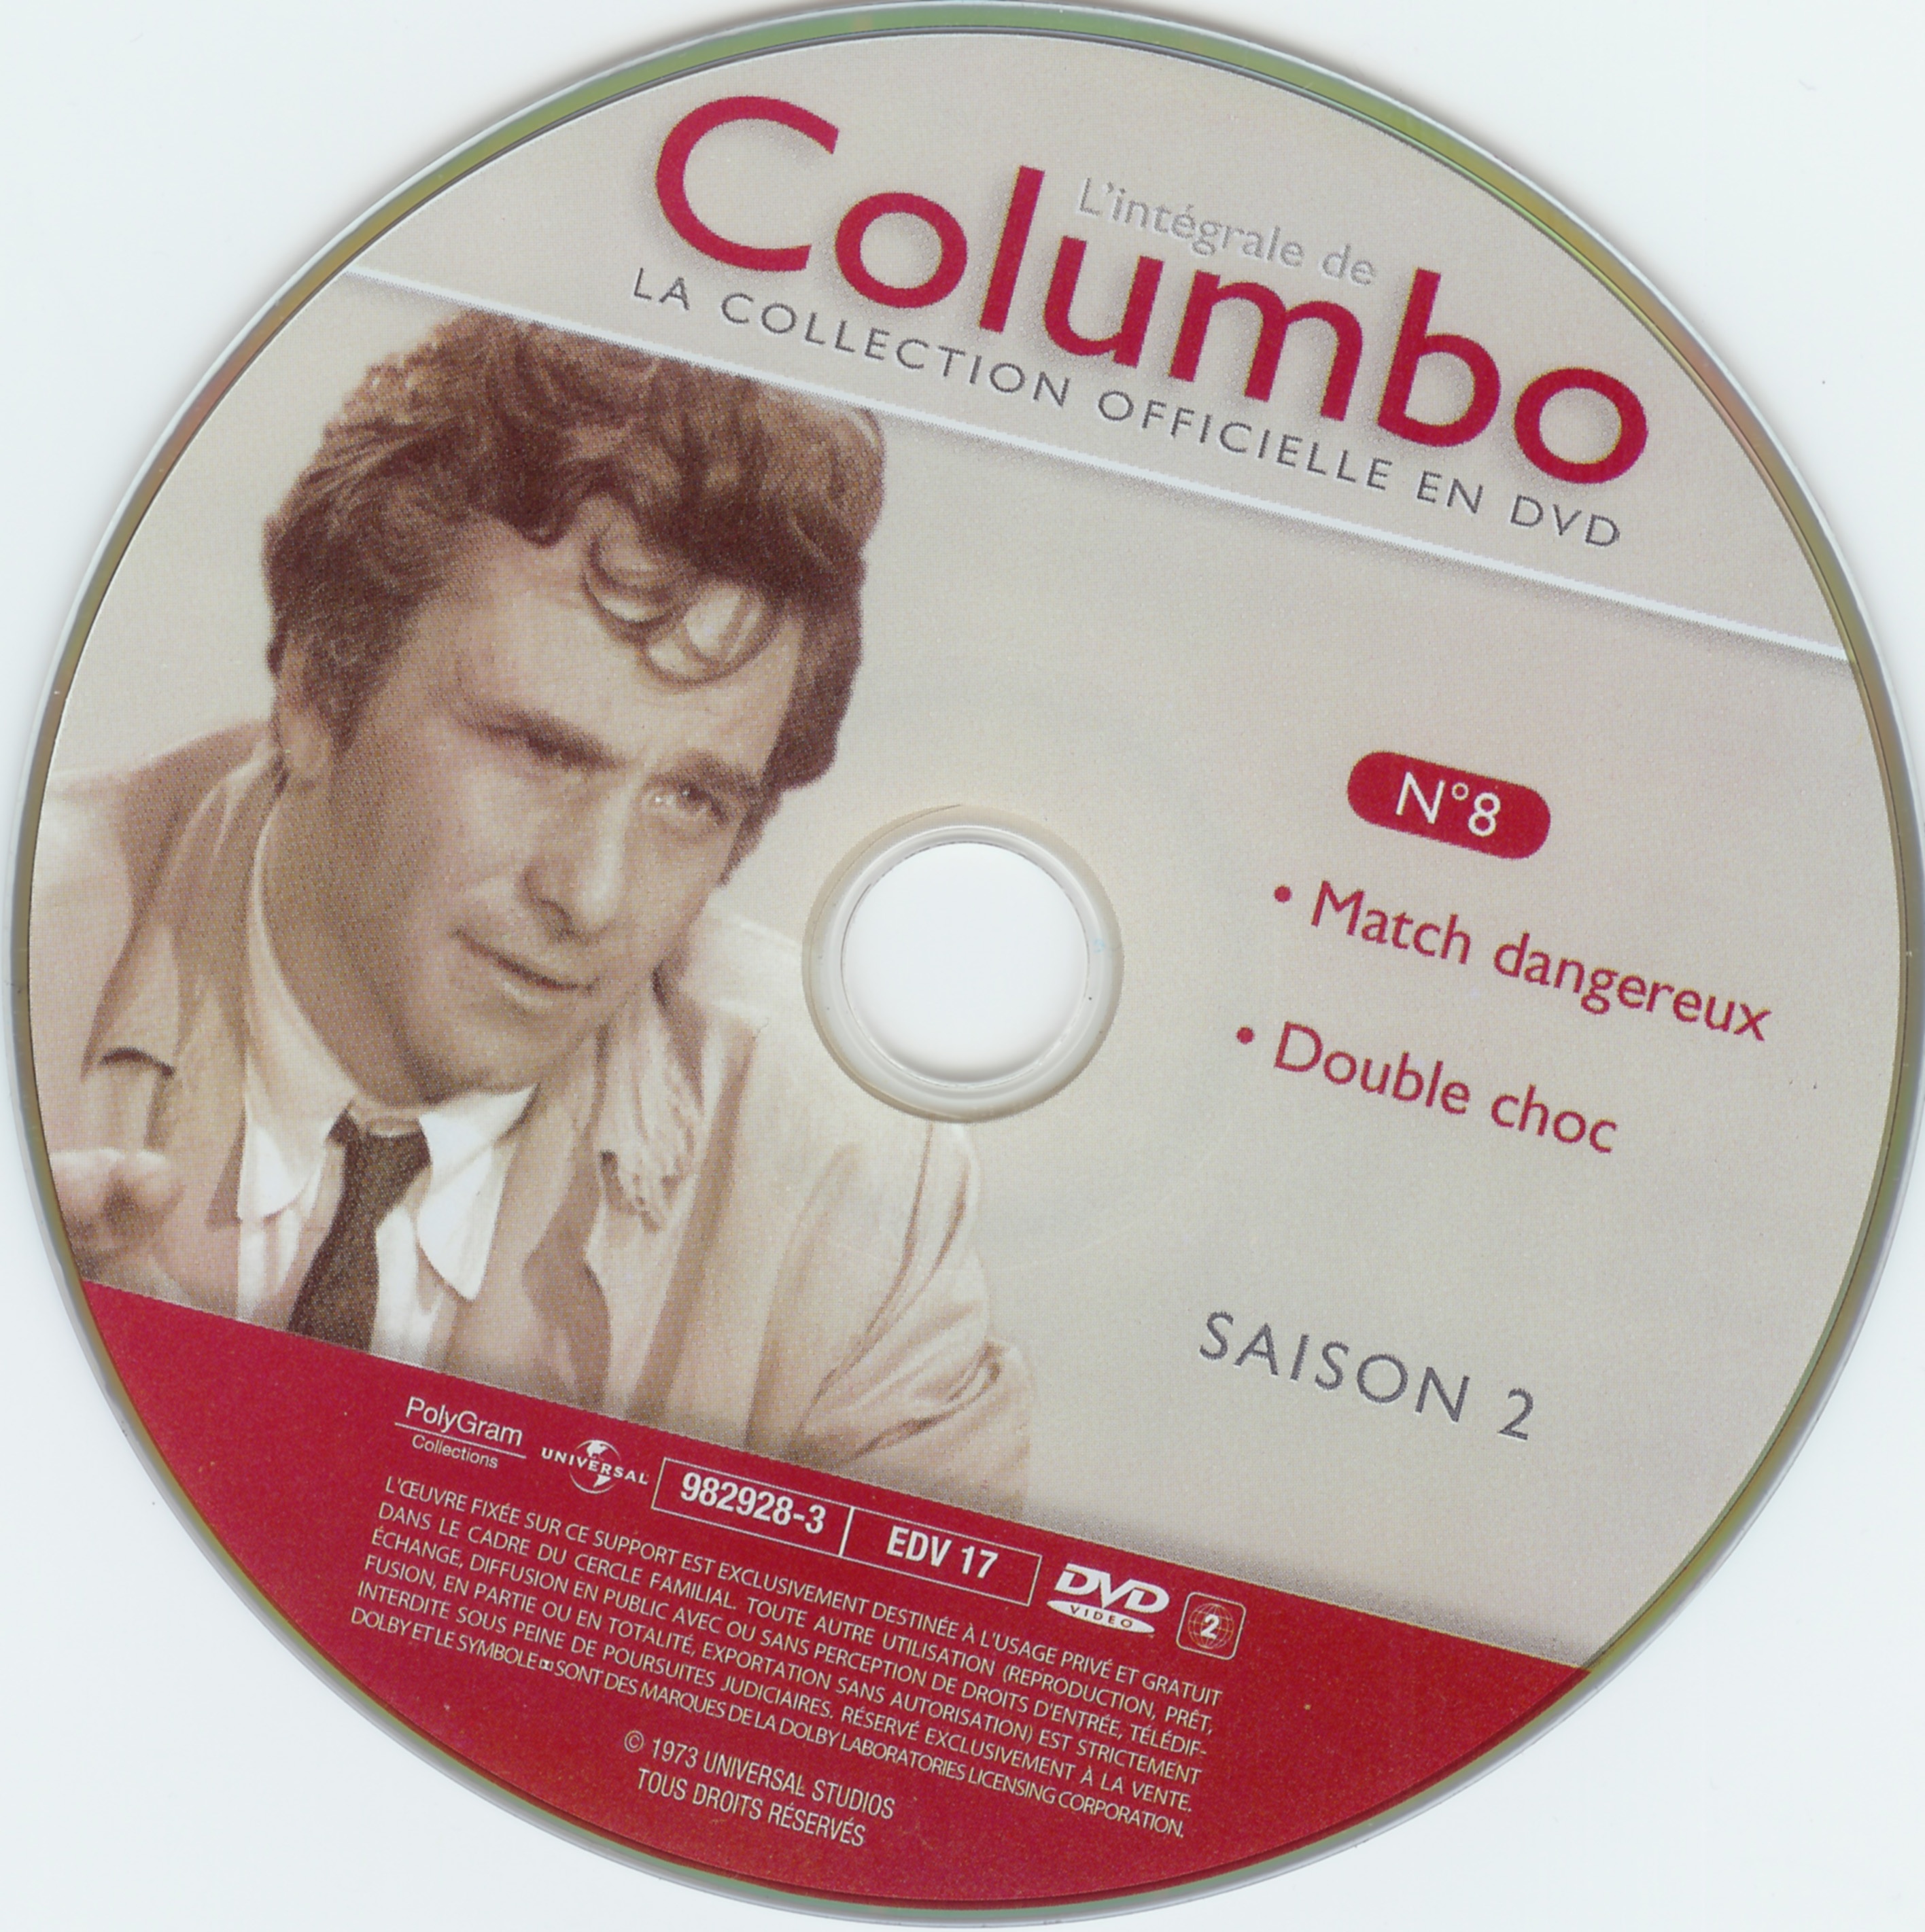 Columbo saison 2 vol 08